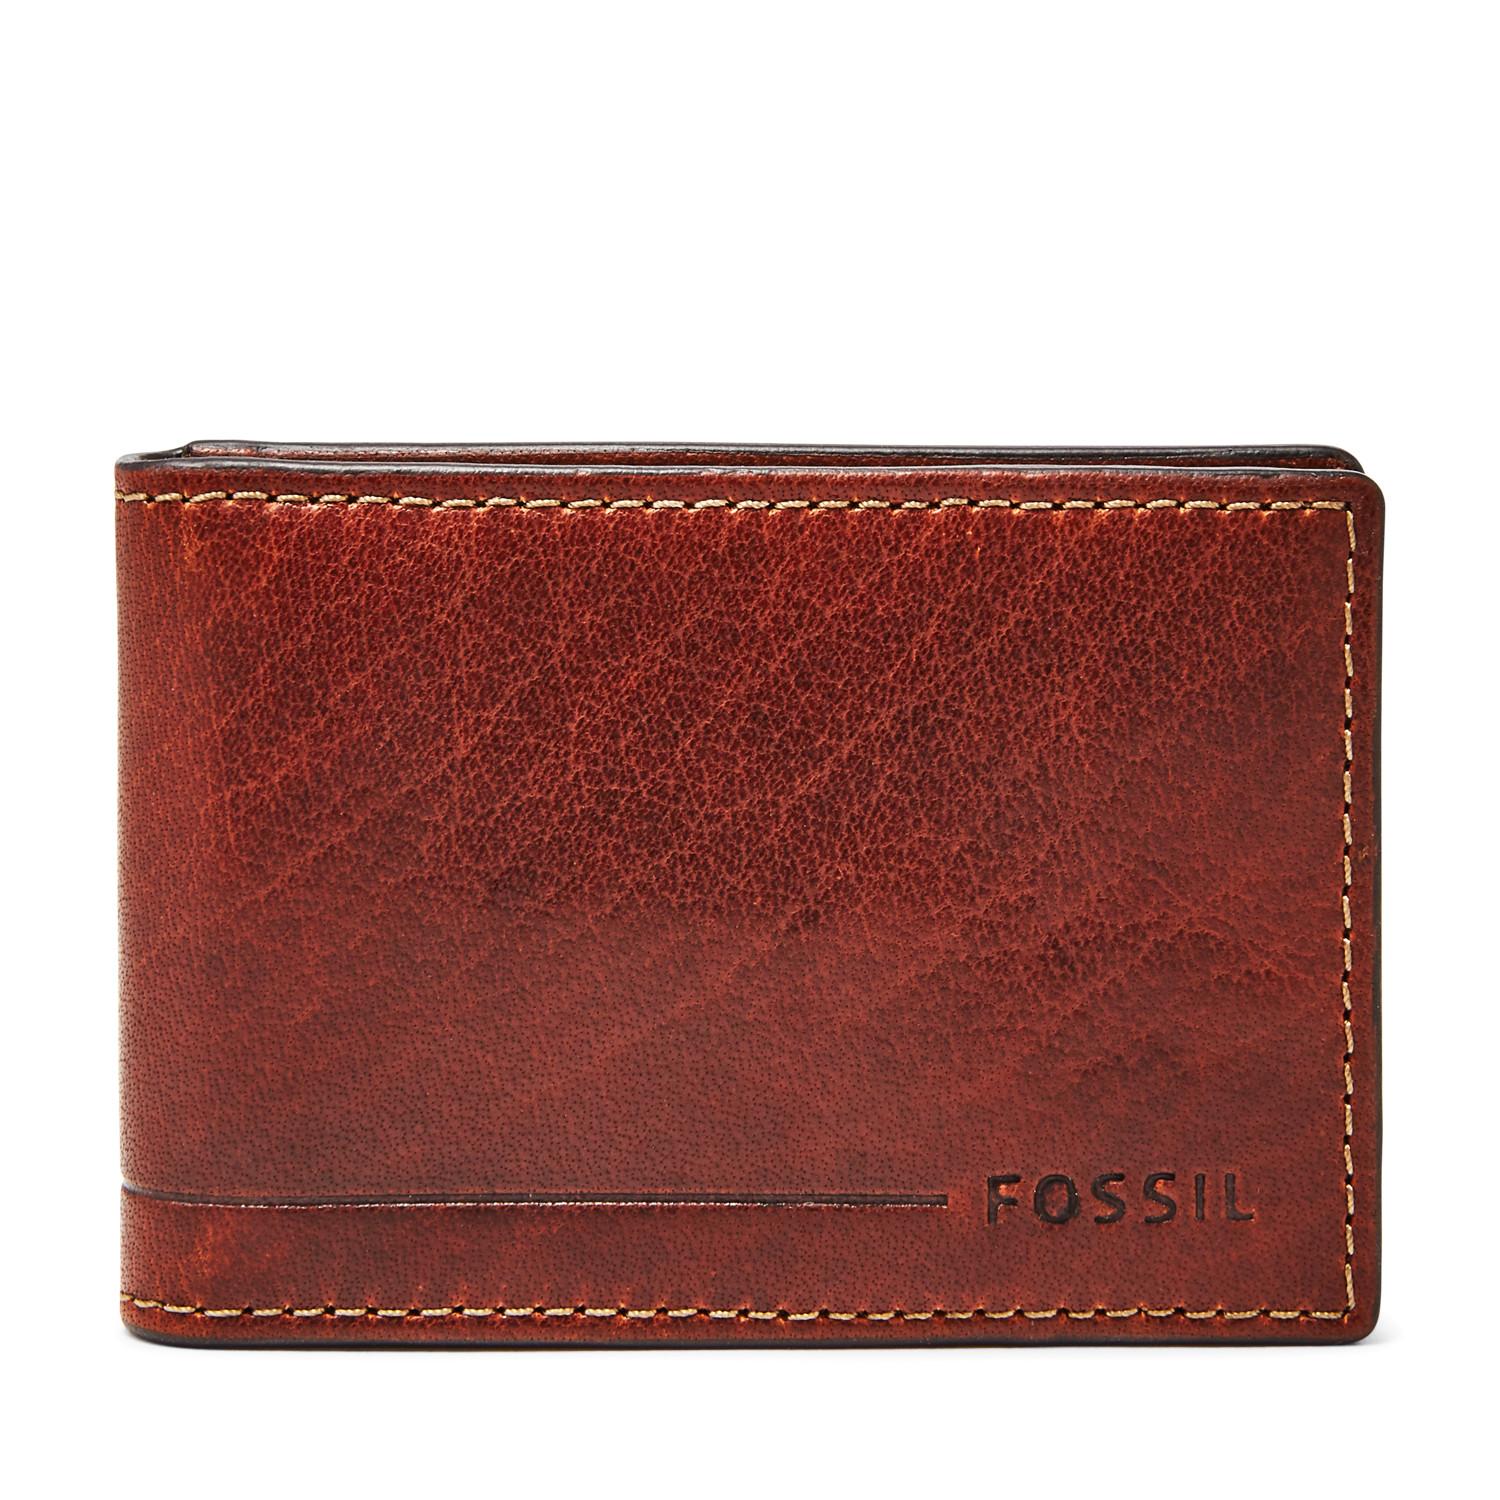 Fossil Allen Rfid Magnetic Front Pocket Wallet Wallet Tan for Men - Lyst